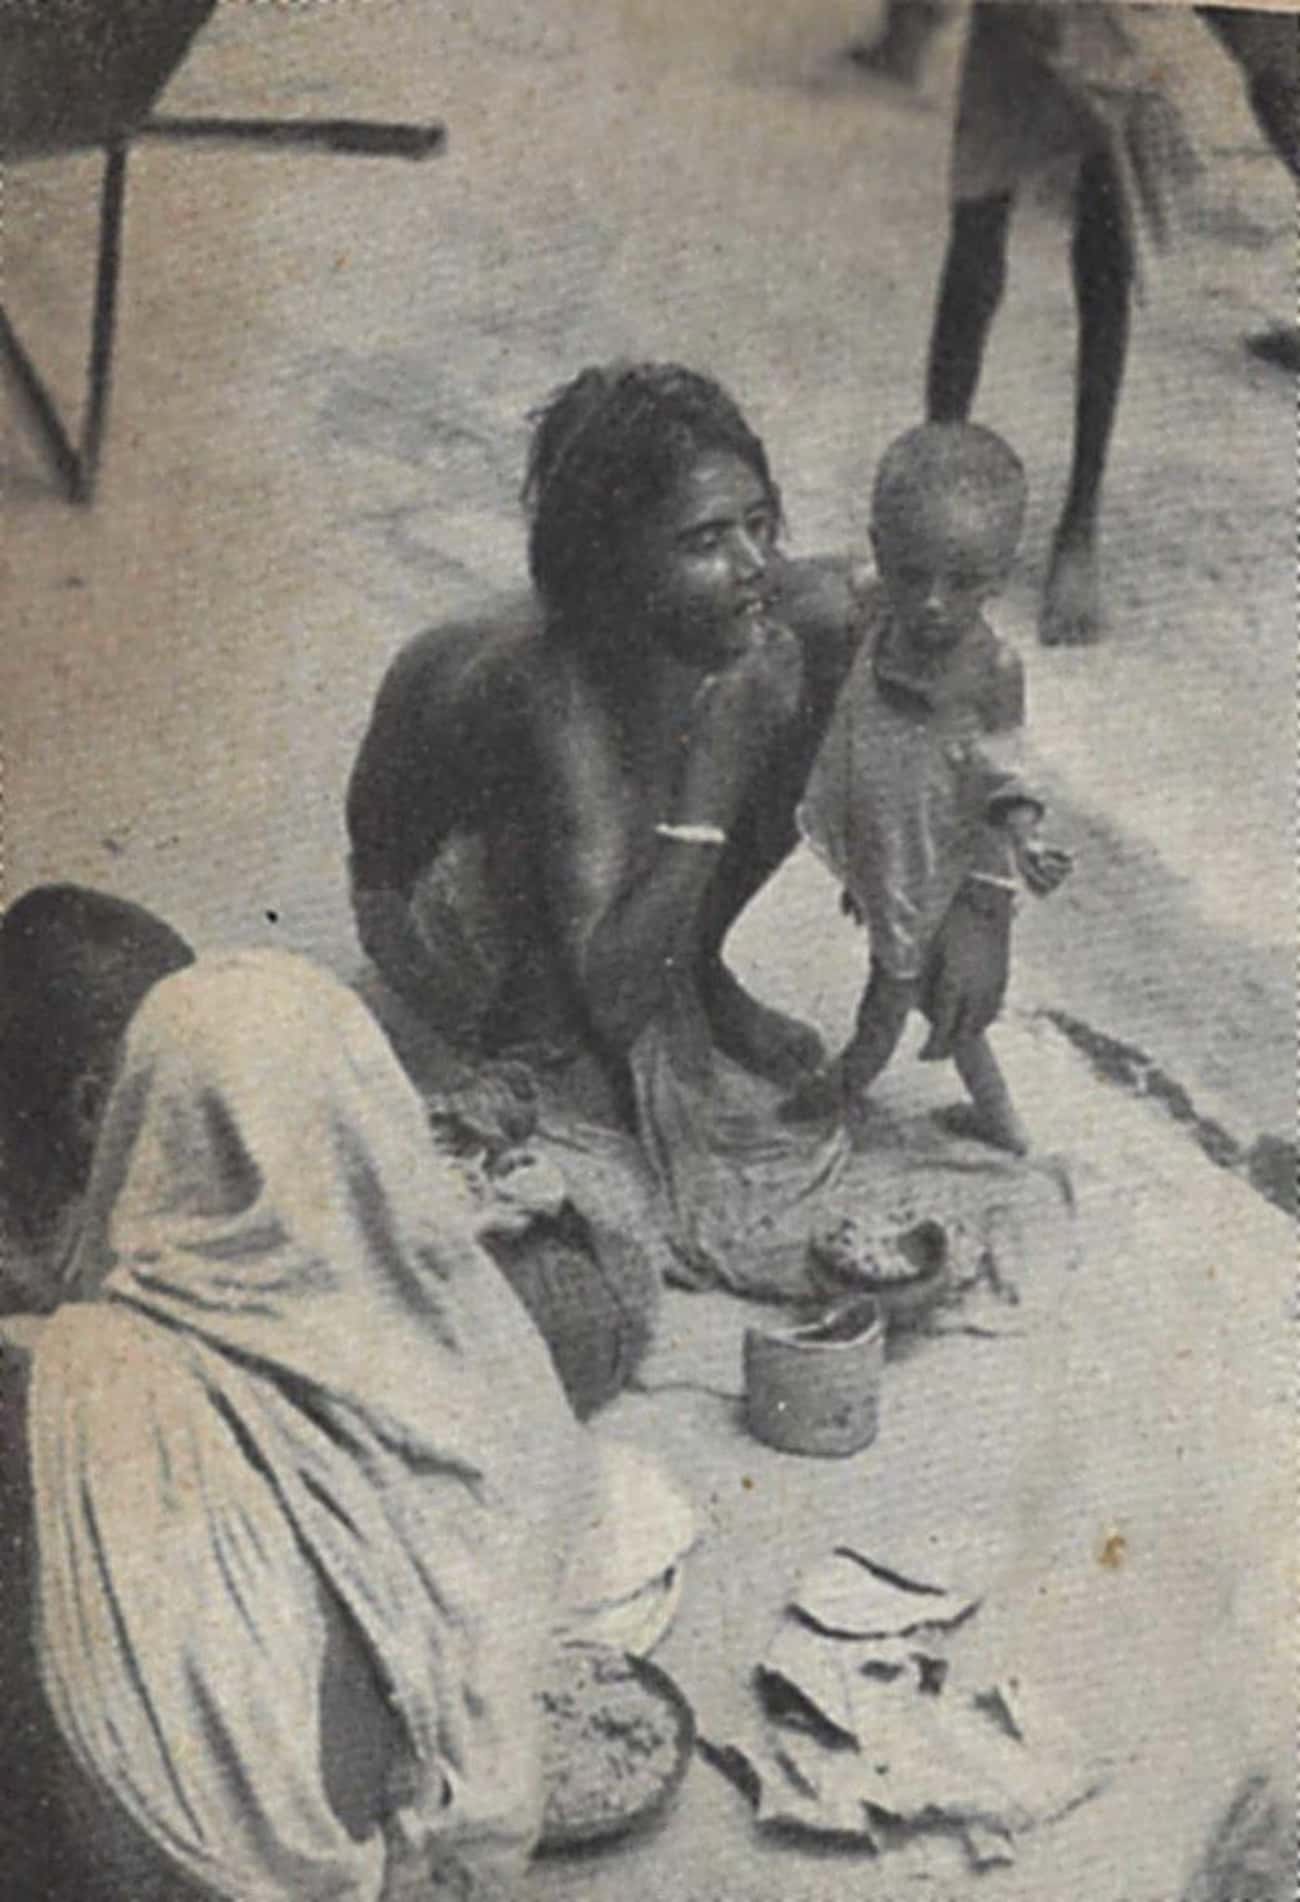 Bengal Famine (1943)